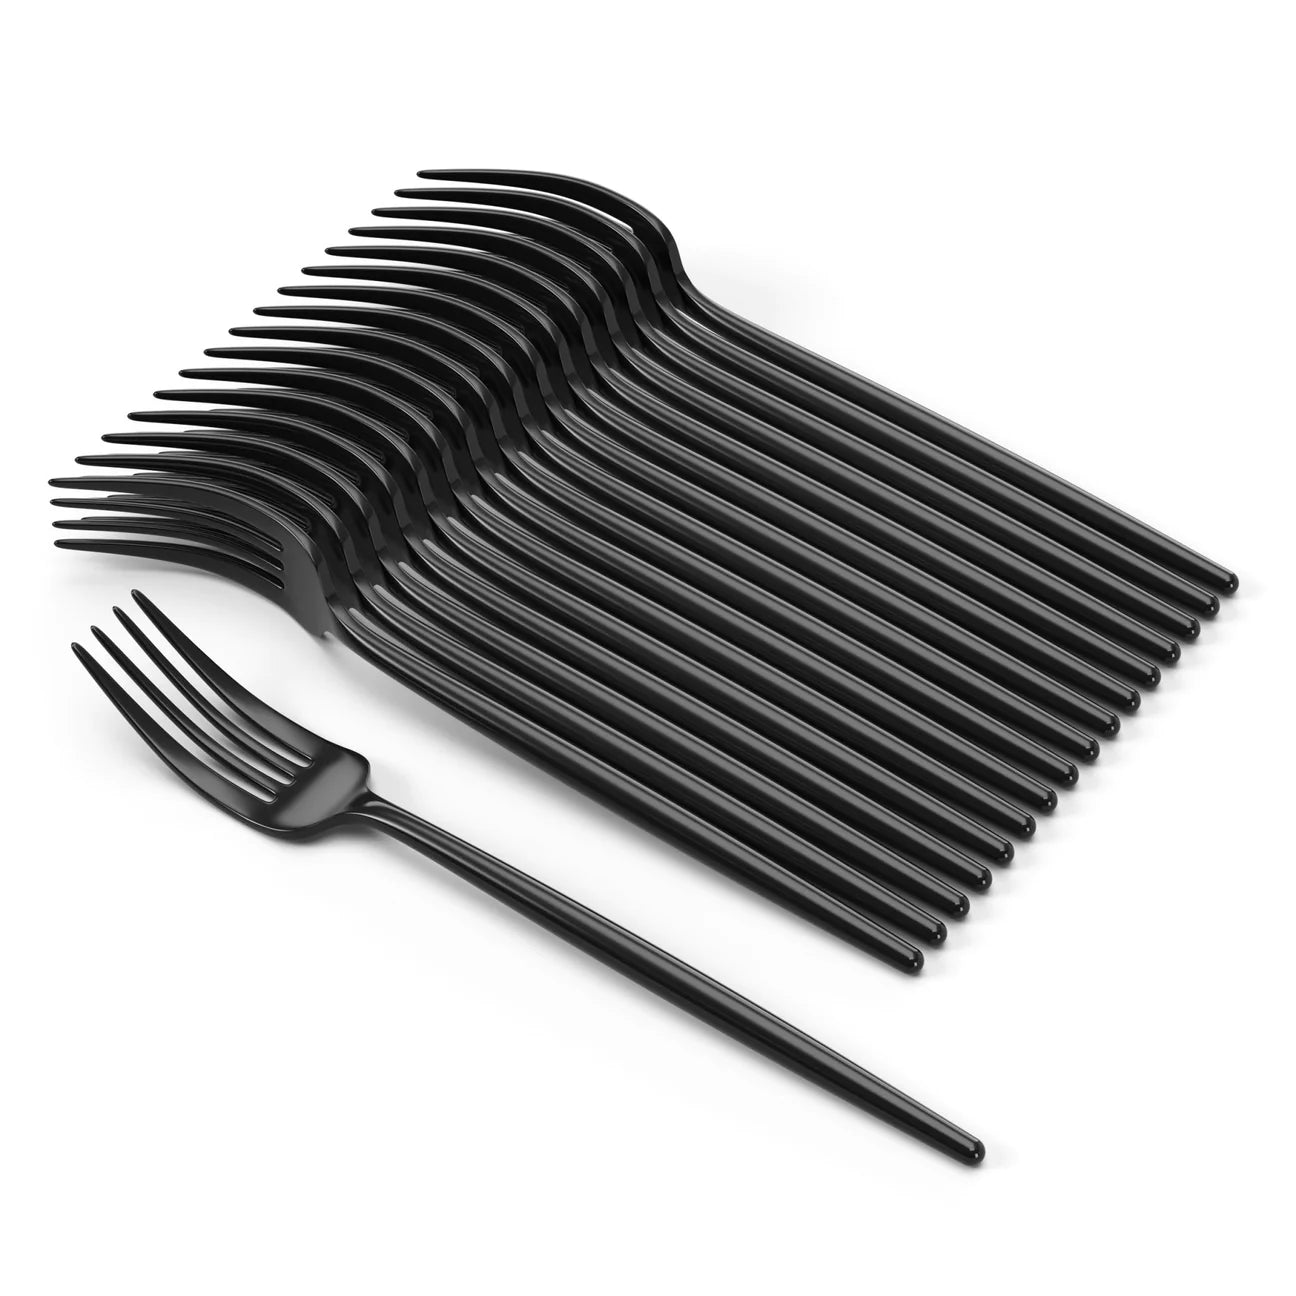 Trendables Gloss Black Plastic Forks (20 Ct)